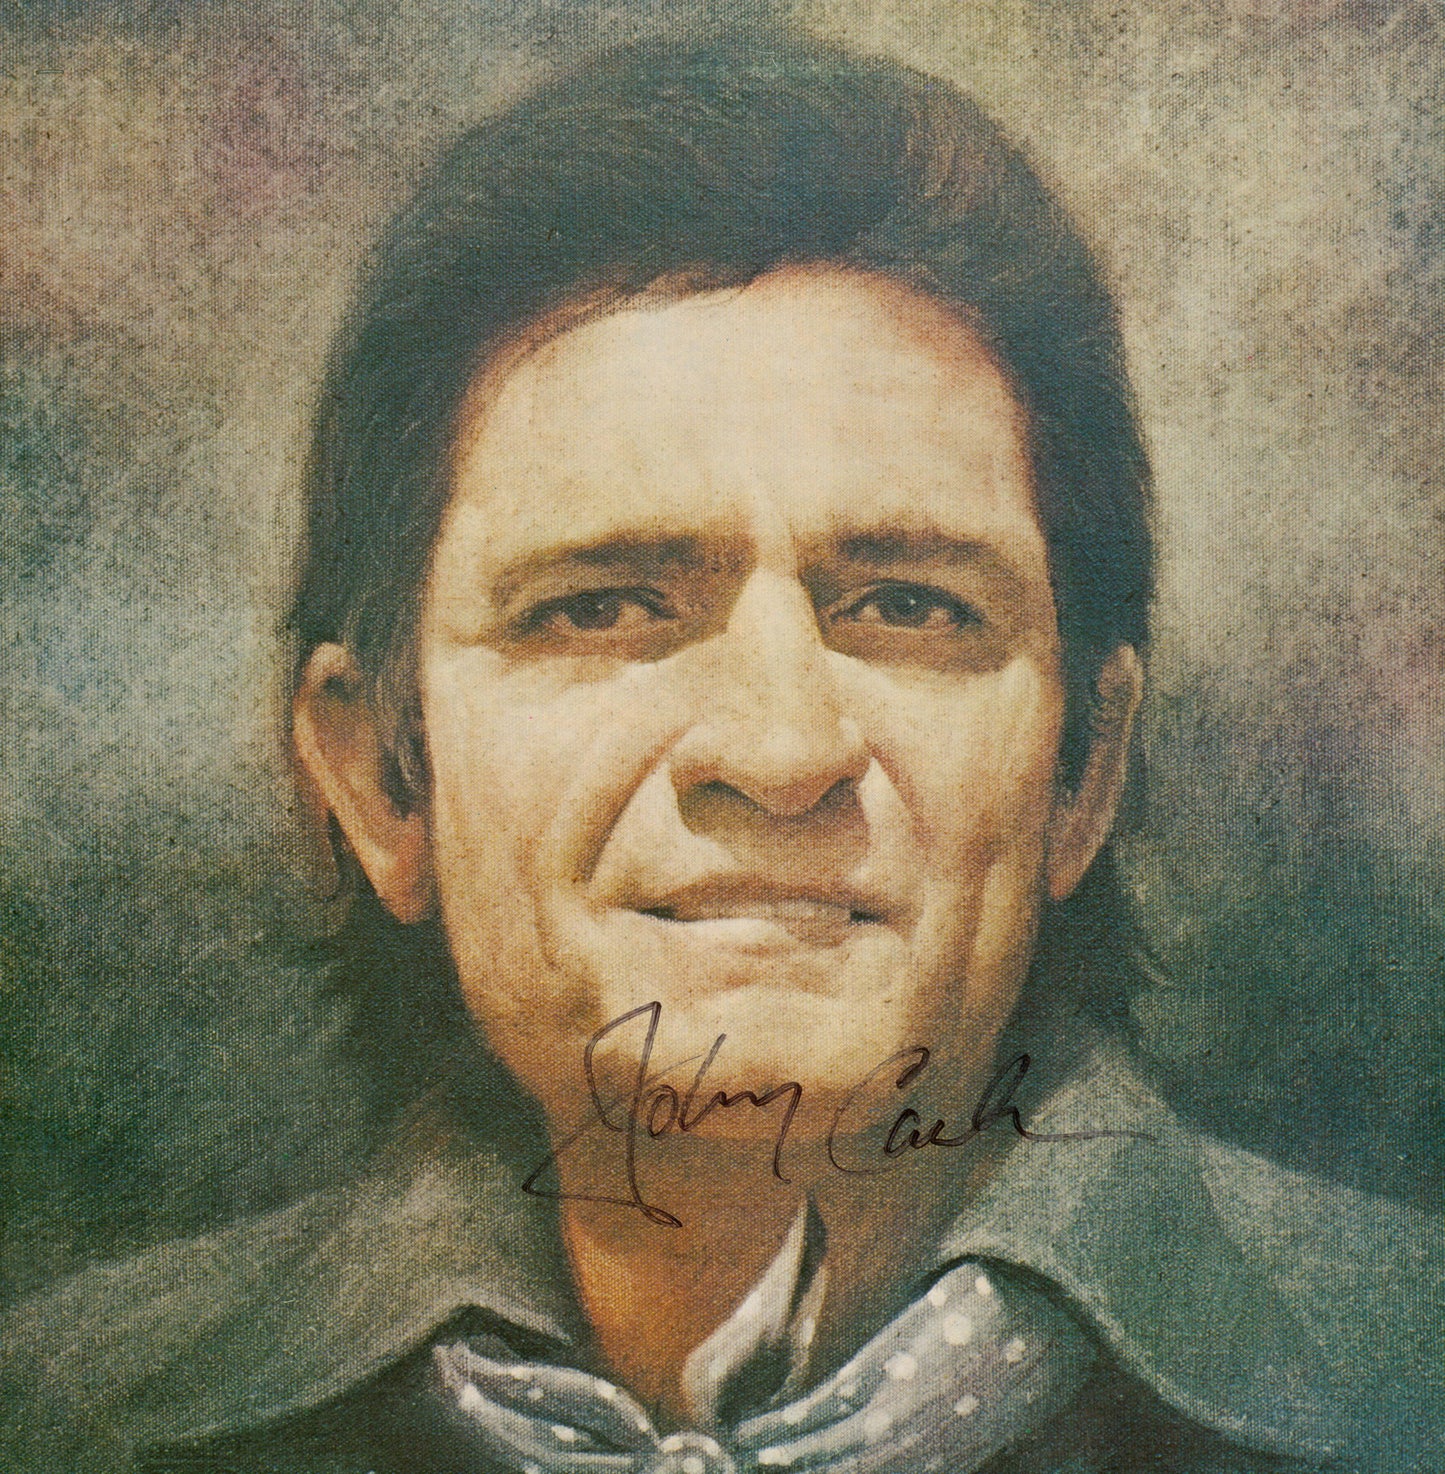 Johnny Cash Autographed lp - Zion Graphic Collectibles